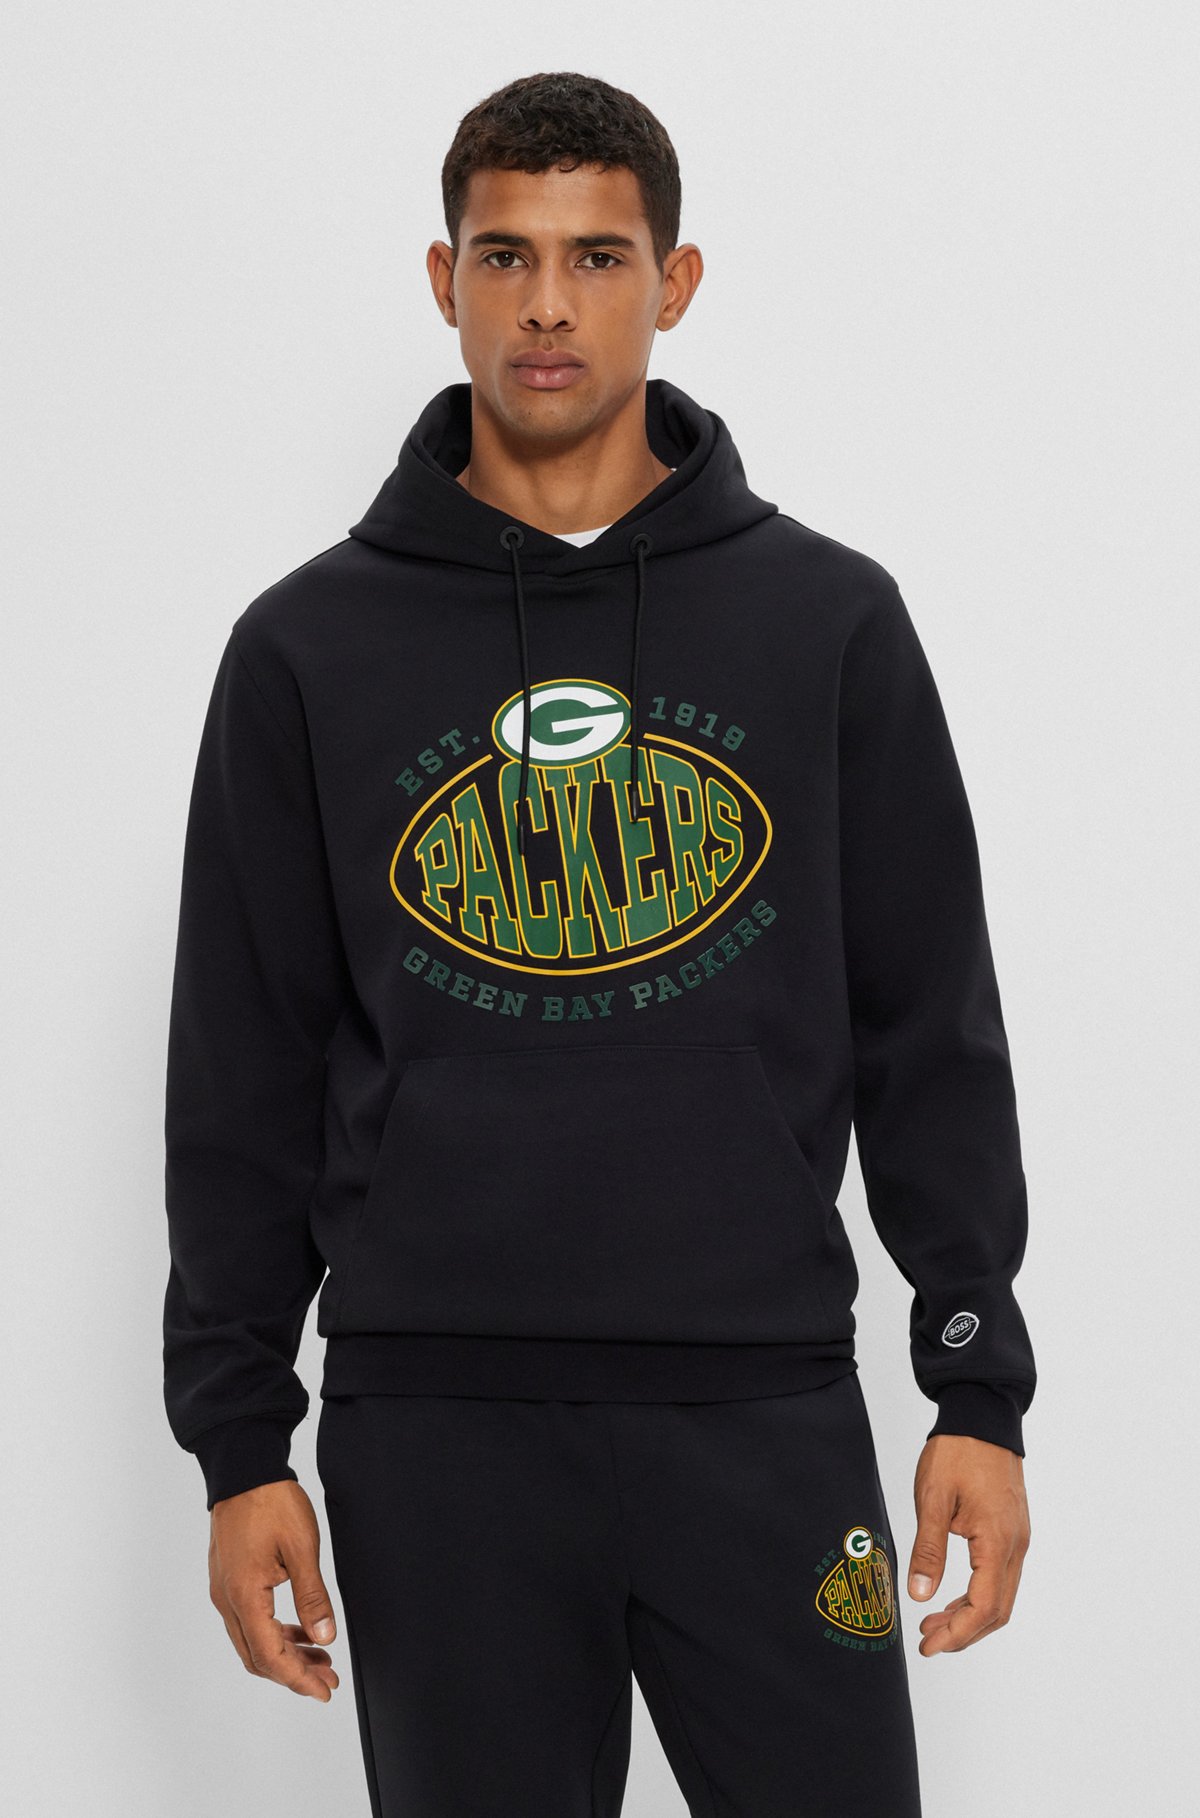 green bay packers black hoodie